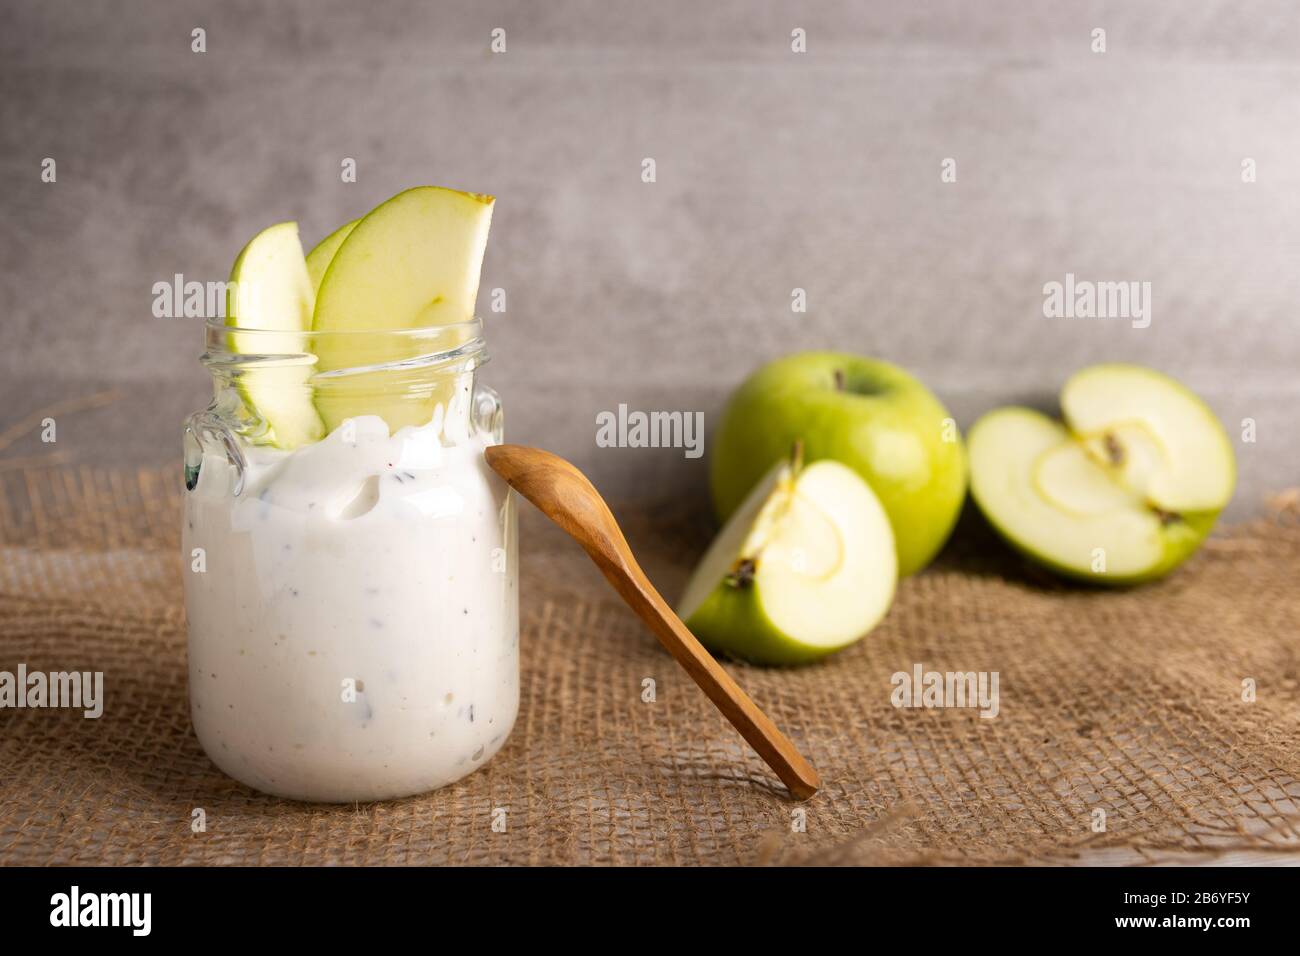 Frühstück Bio-Joghurt in einem Mixbecher mit reiner Schokolade und frischen Apfelscheiben Stockfoto